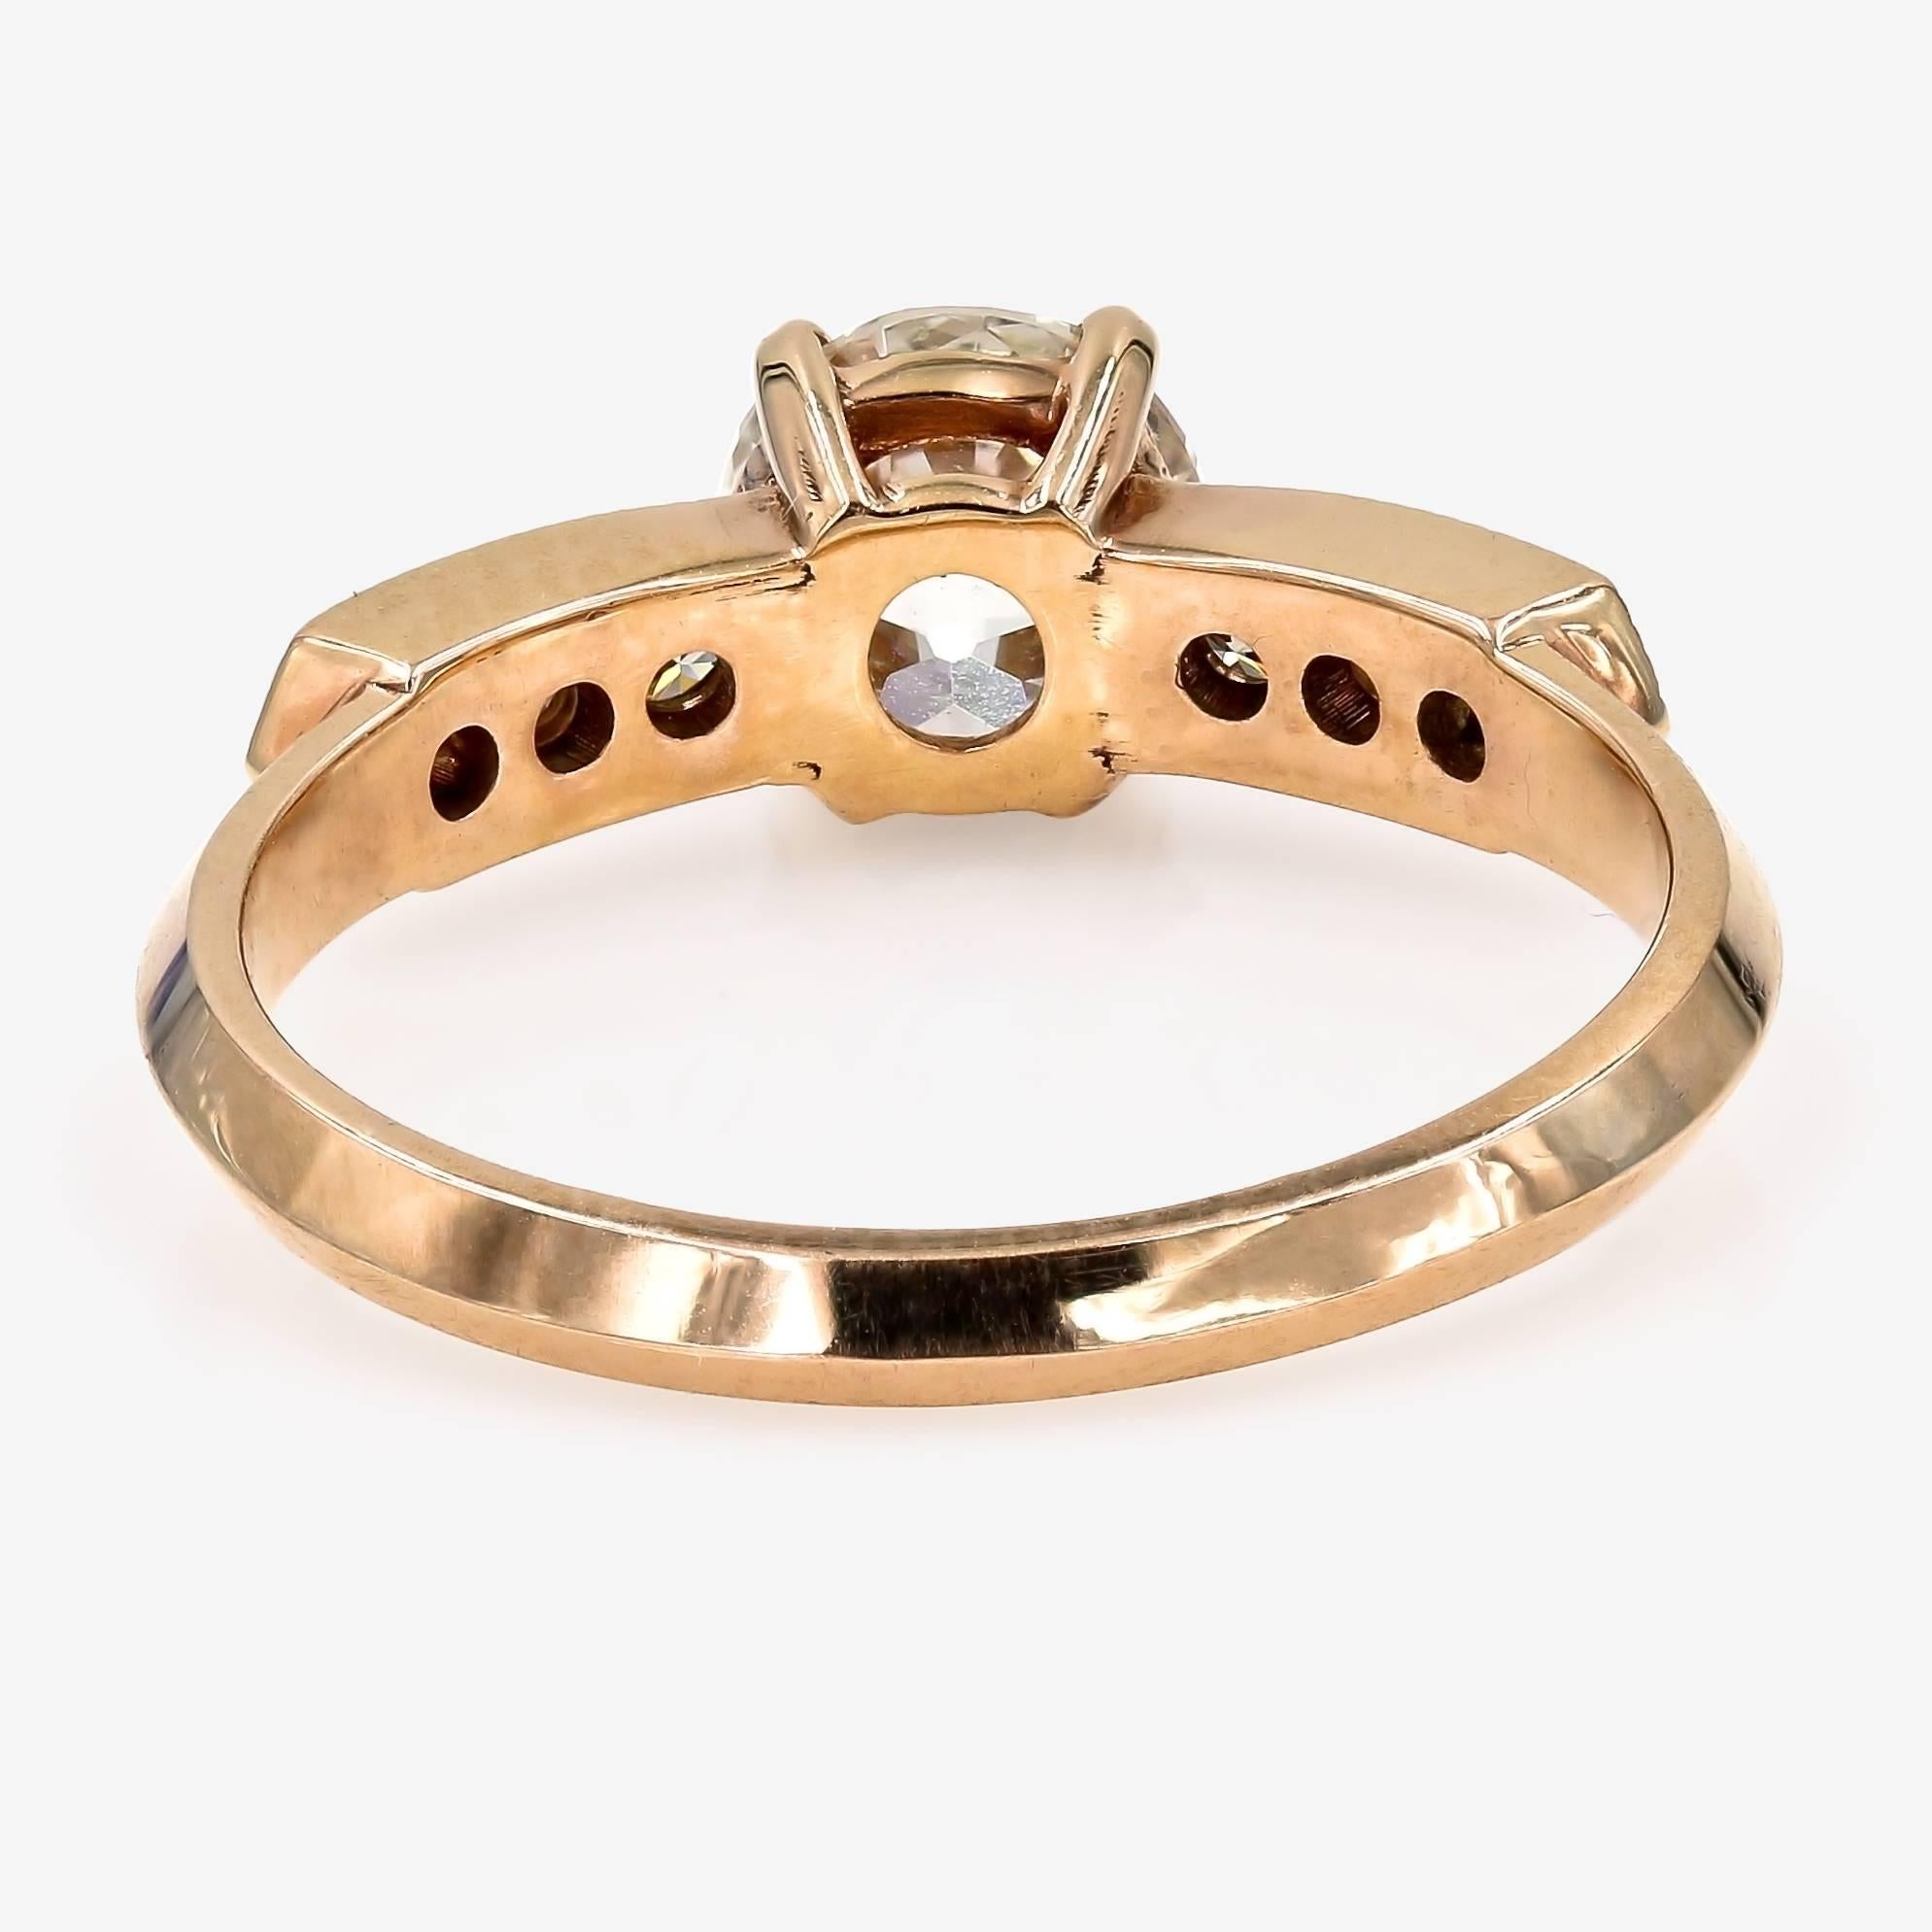 GIA Certified 1.08 Carat Old European Cut Round Diamond Ring in Rose Gold 1